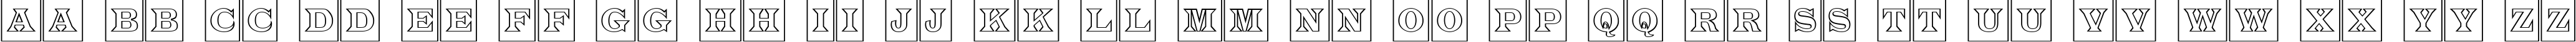 Пример написания английского алфавита шрифтом a_LatinoTitulCmOtl